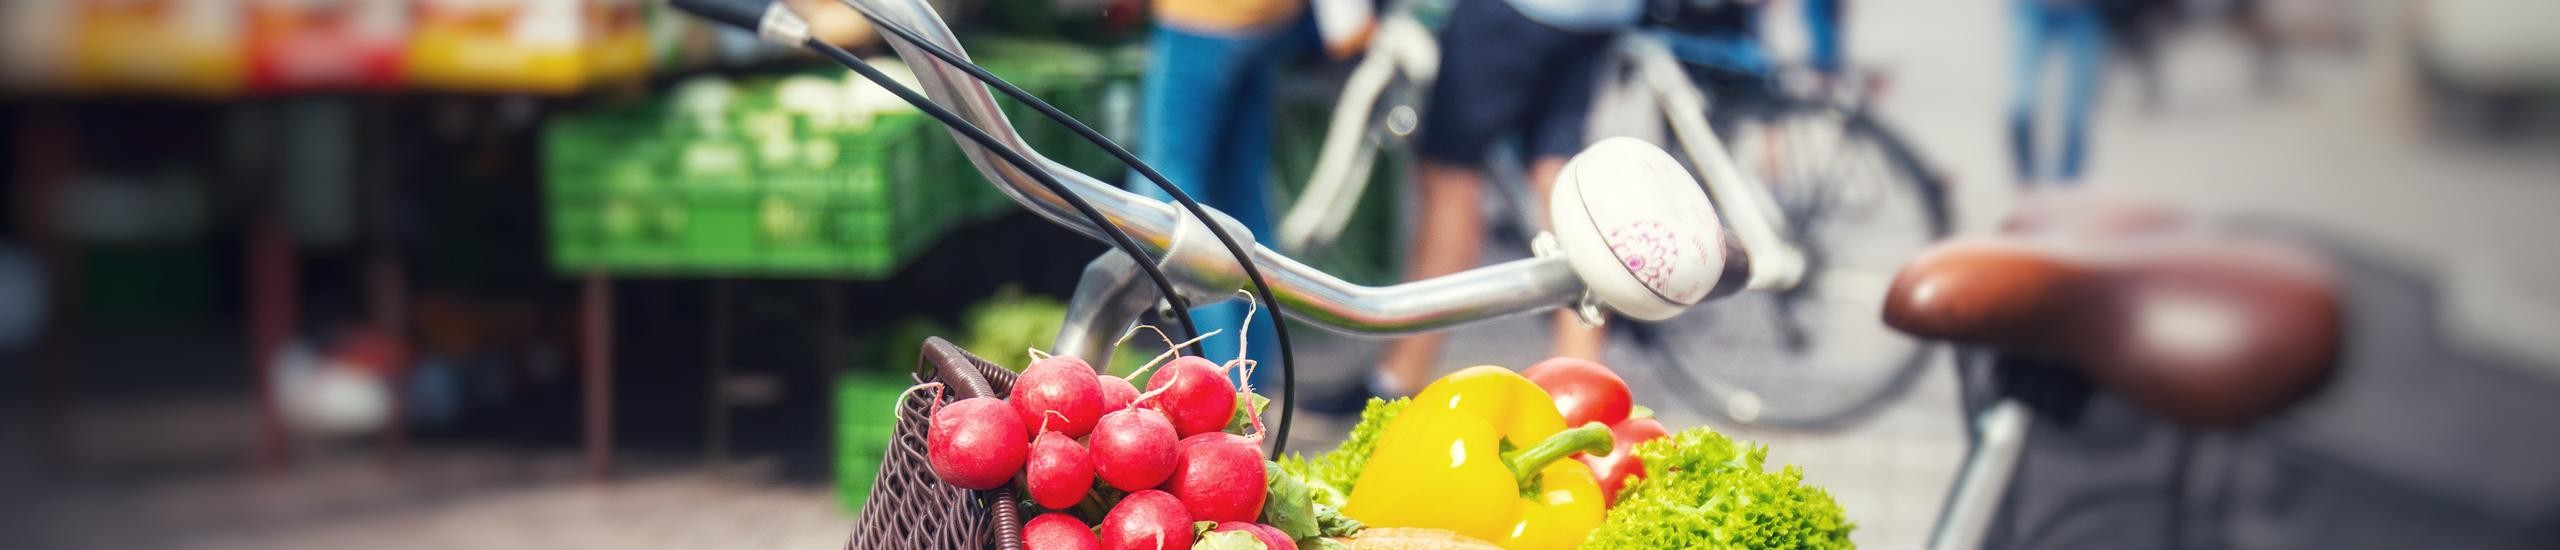 Fahrrad auf dem Markt mit Gemüse